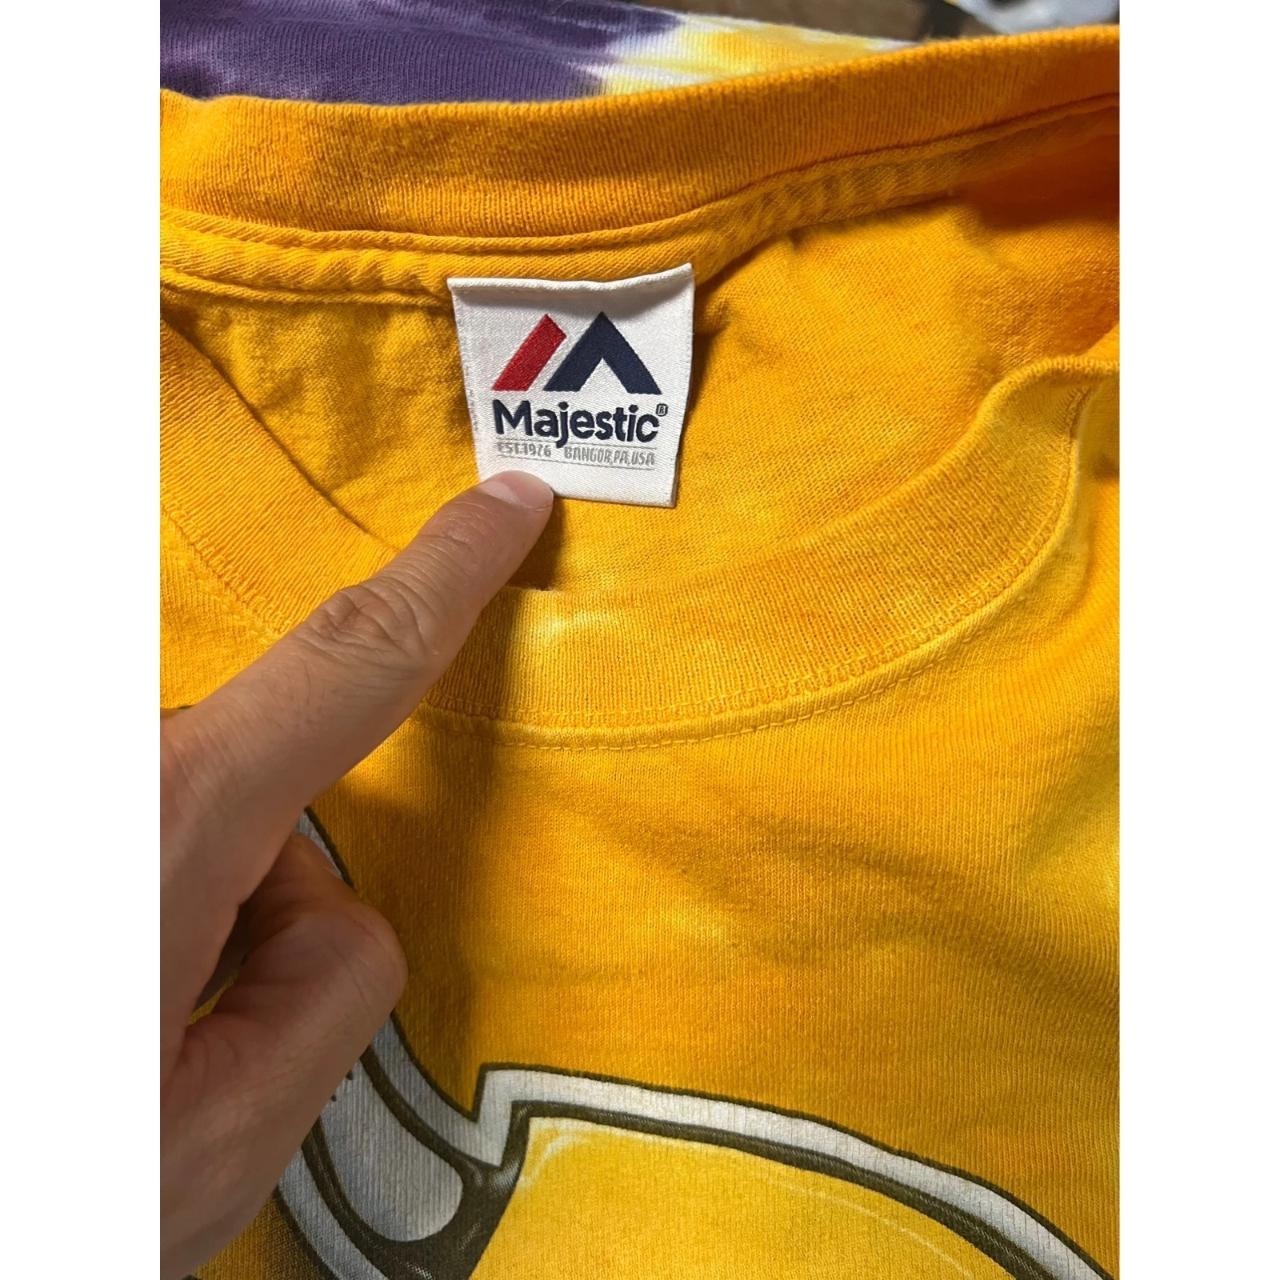 Minnesota Vikings tie dye majestic T-shirt! Great - Depop